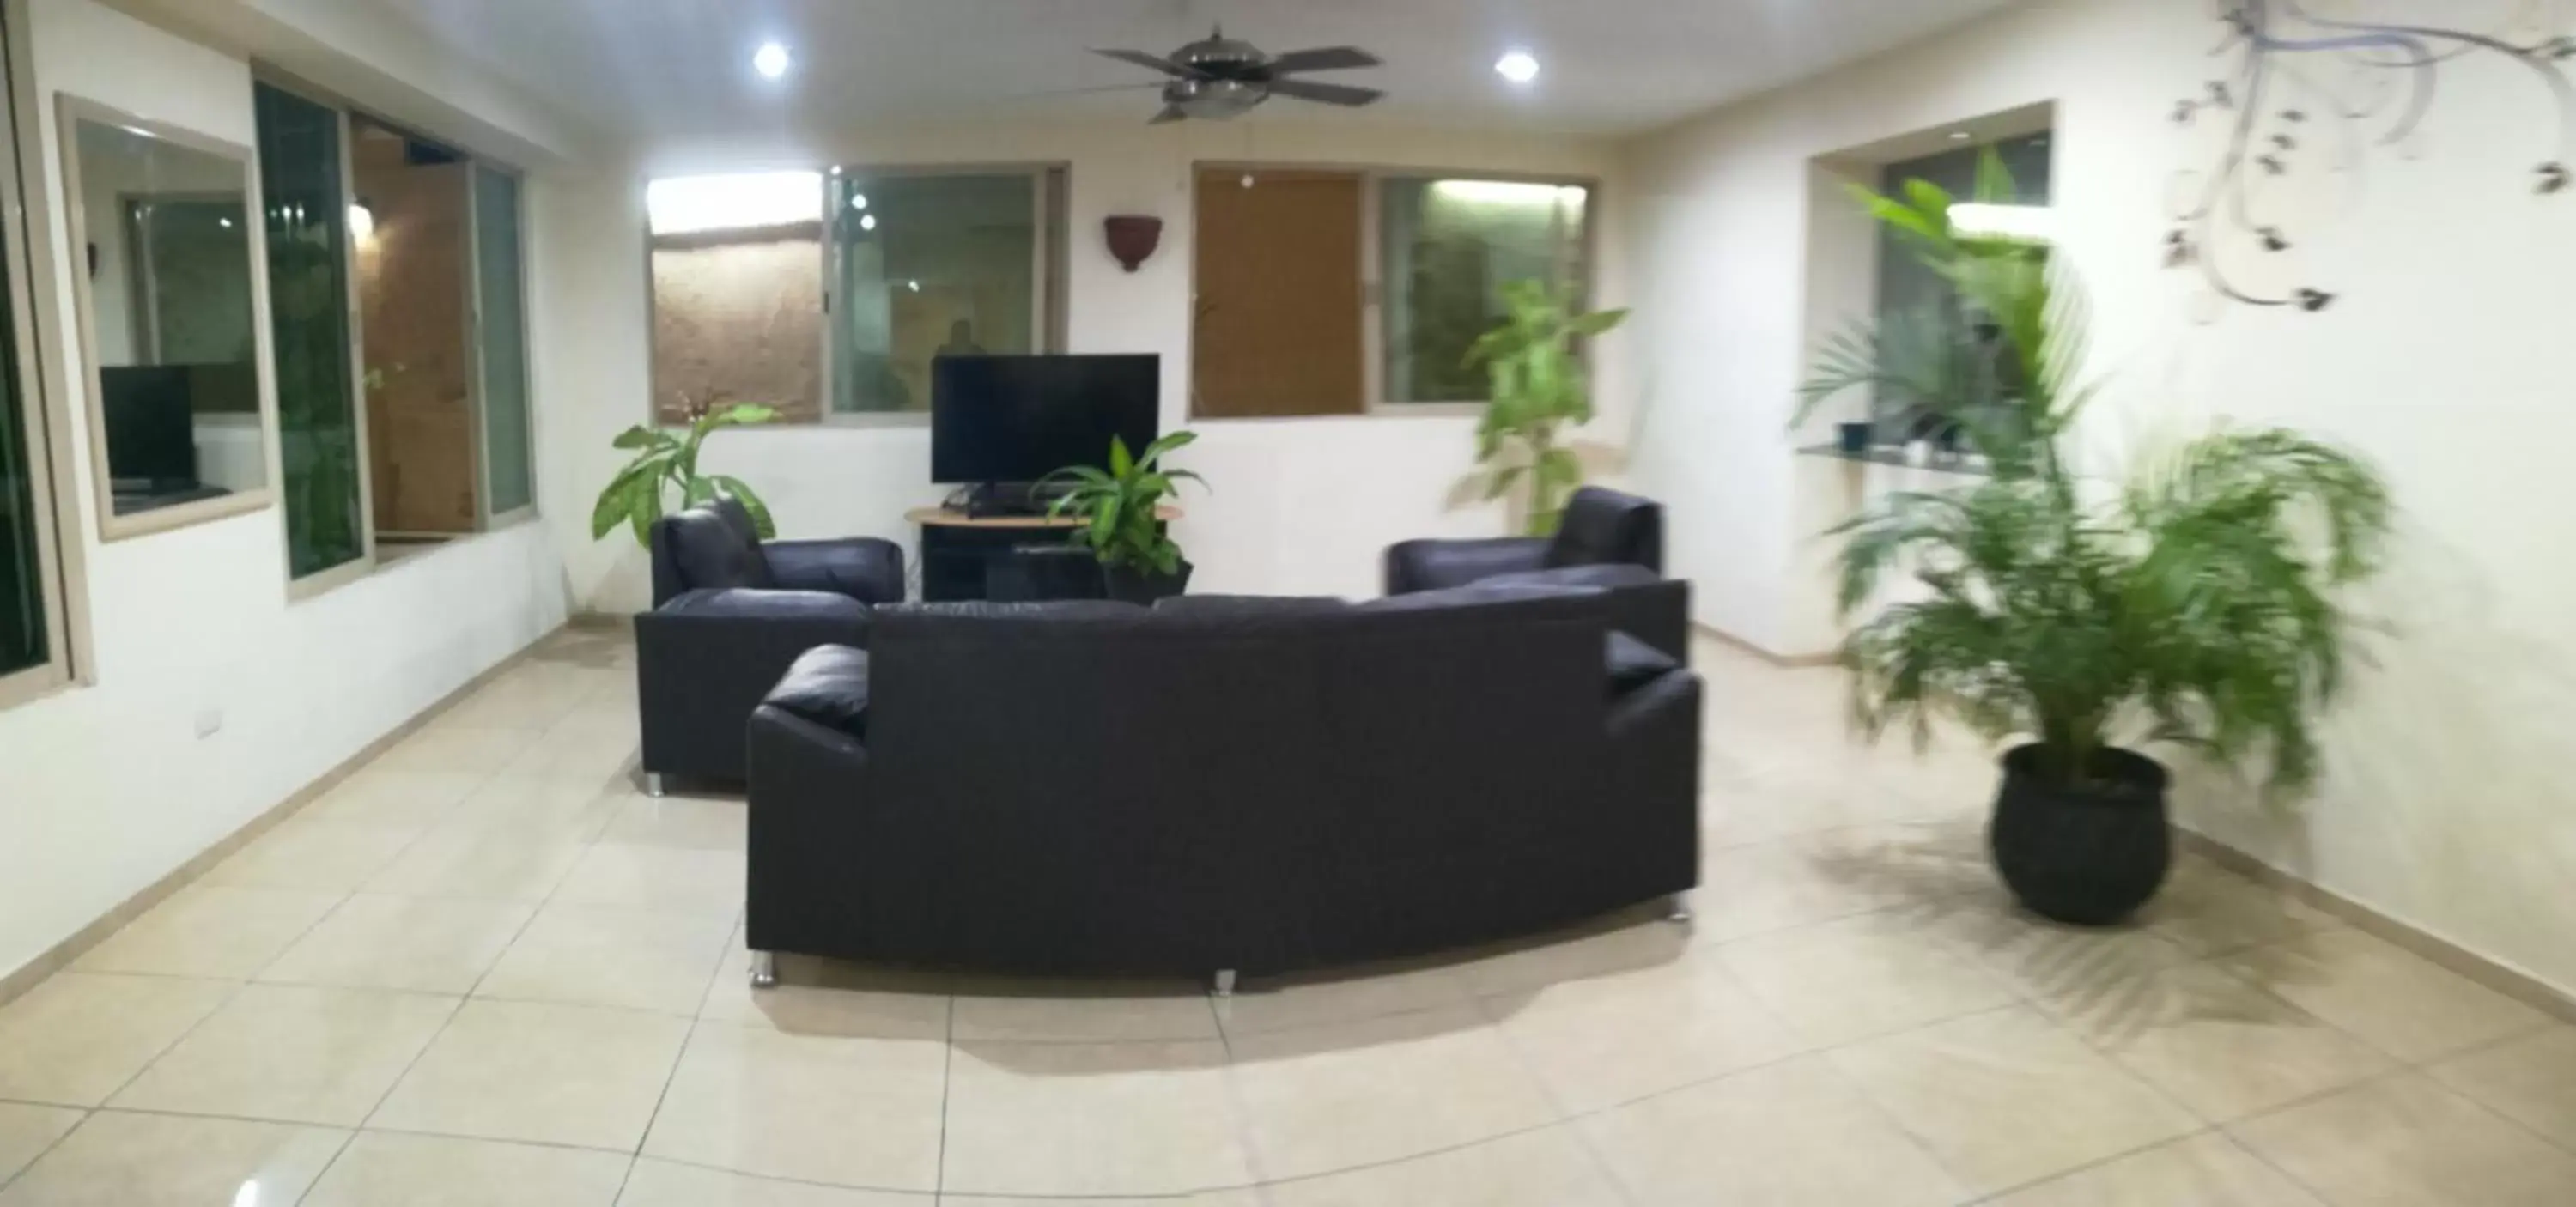 Area and facilities, Lobby/Reception in Hotel El Marques